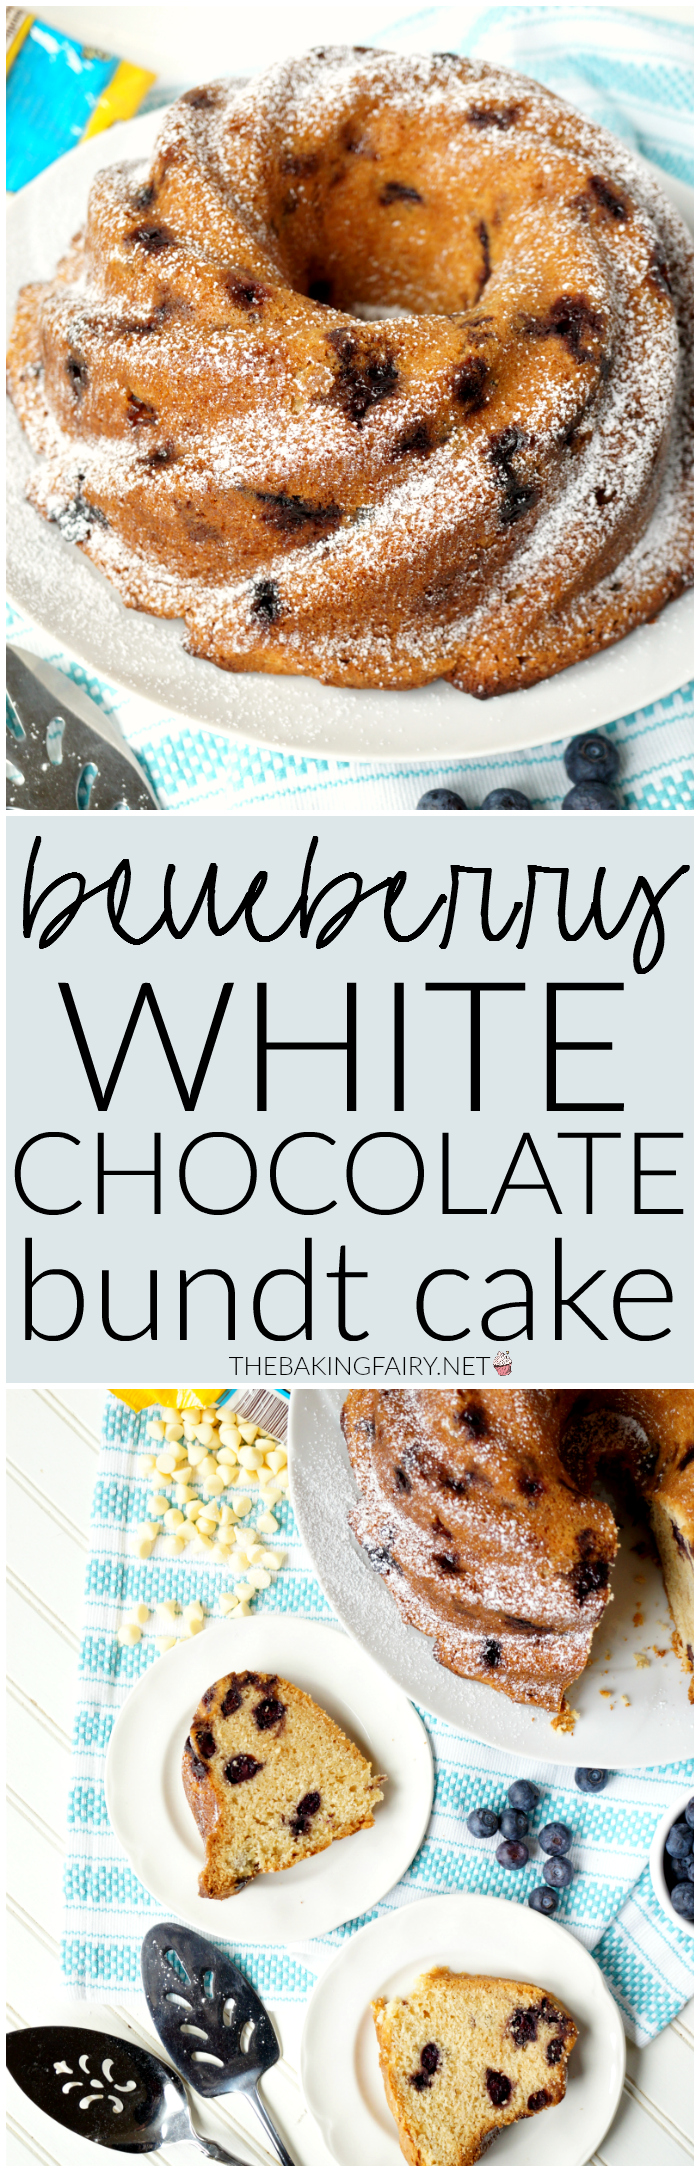 blueberry white chocolate bundt cake | The Baking Fairy